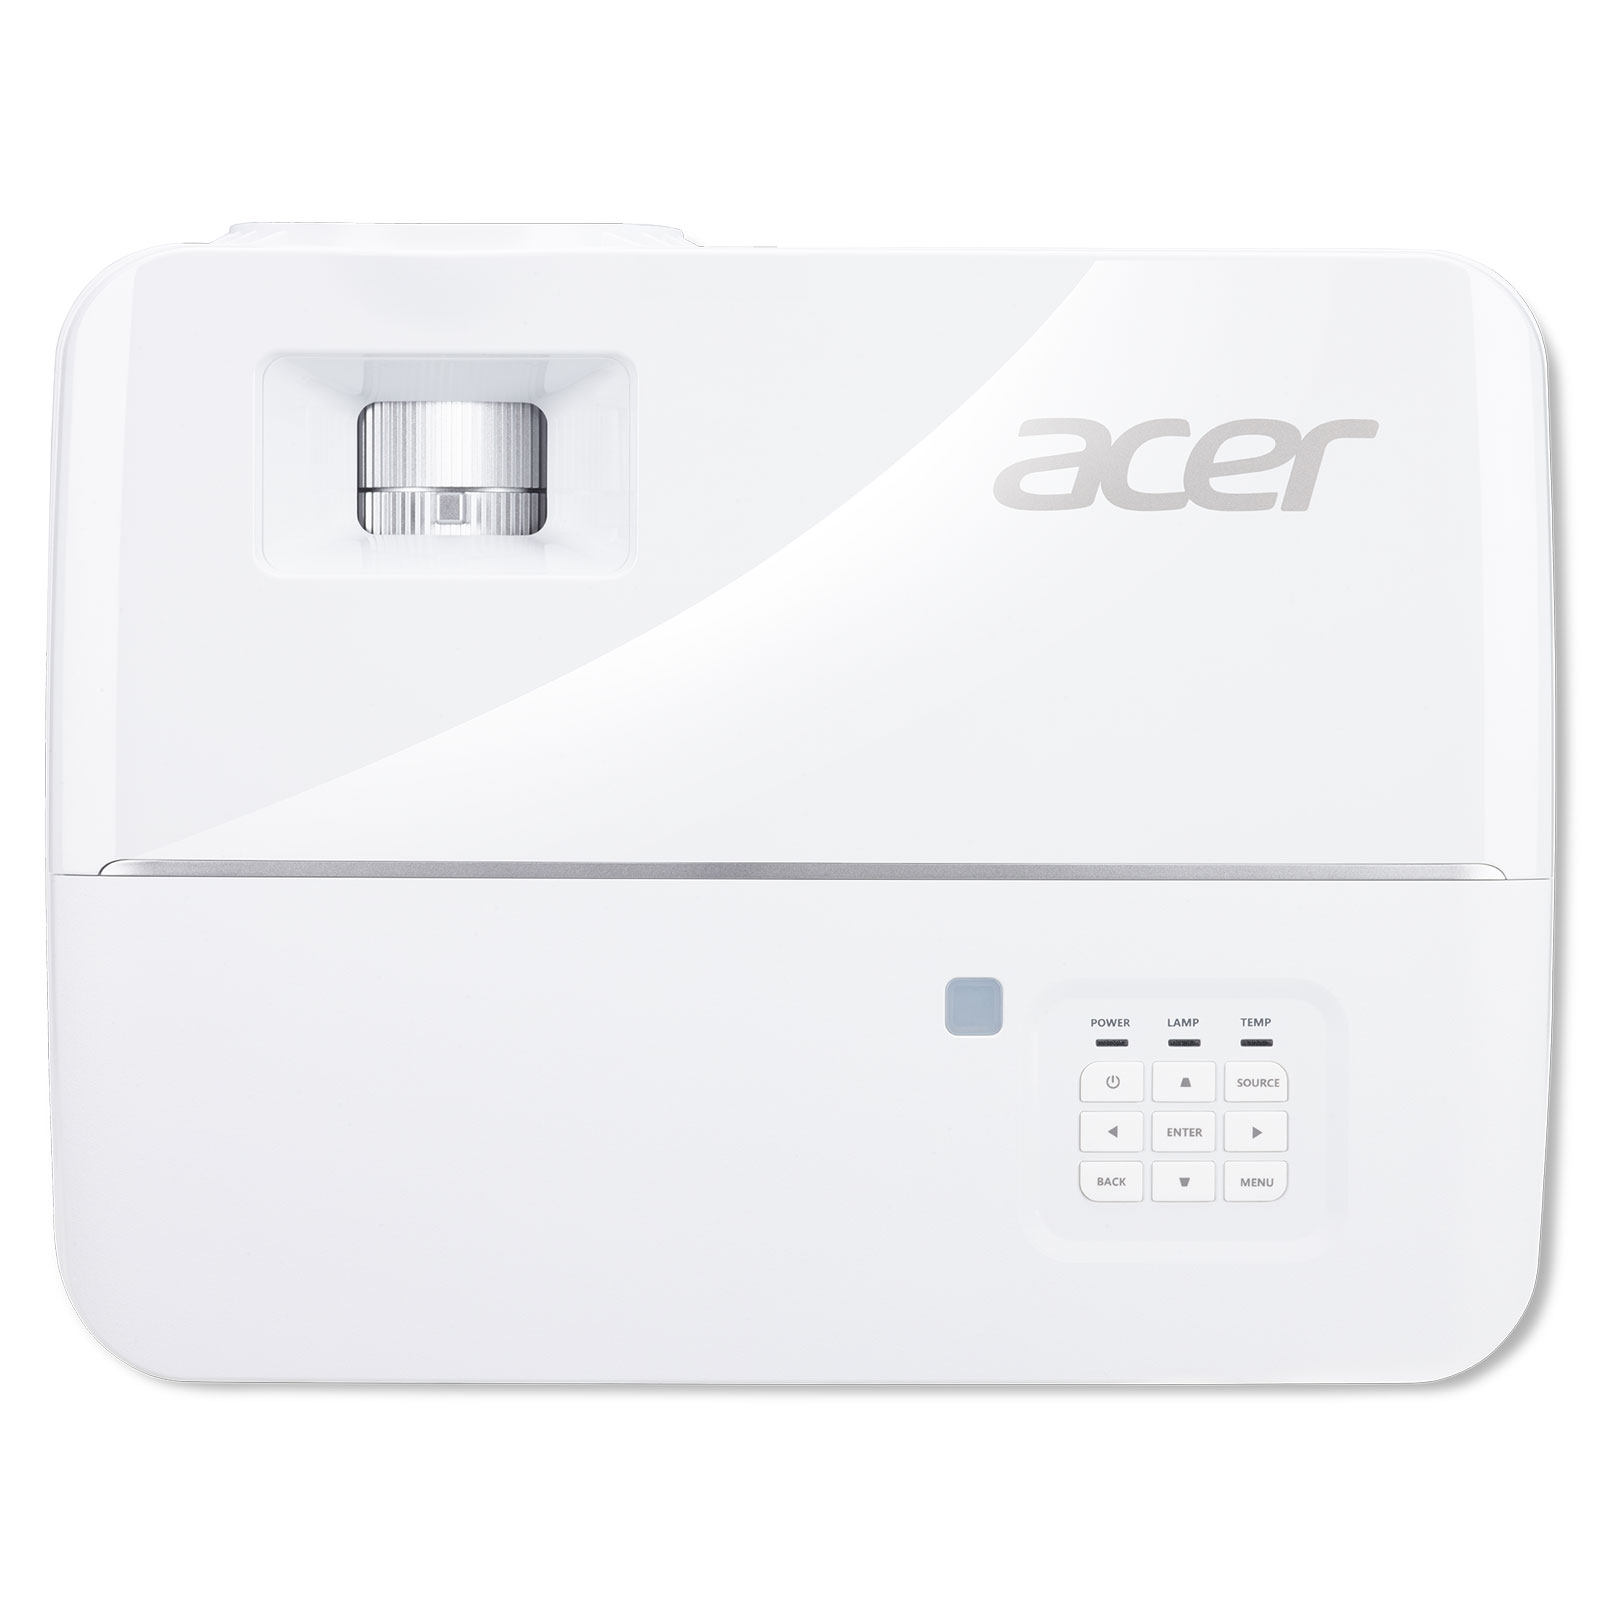 Acer V6810 a bajo precio